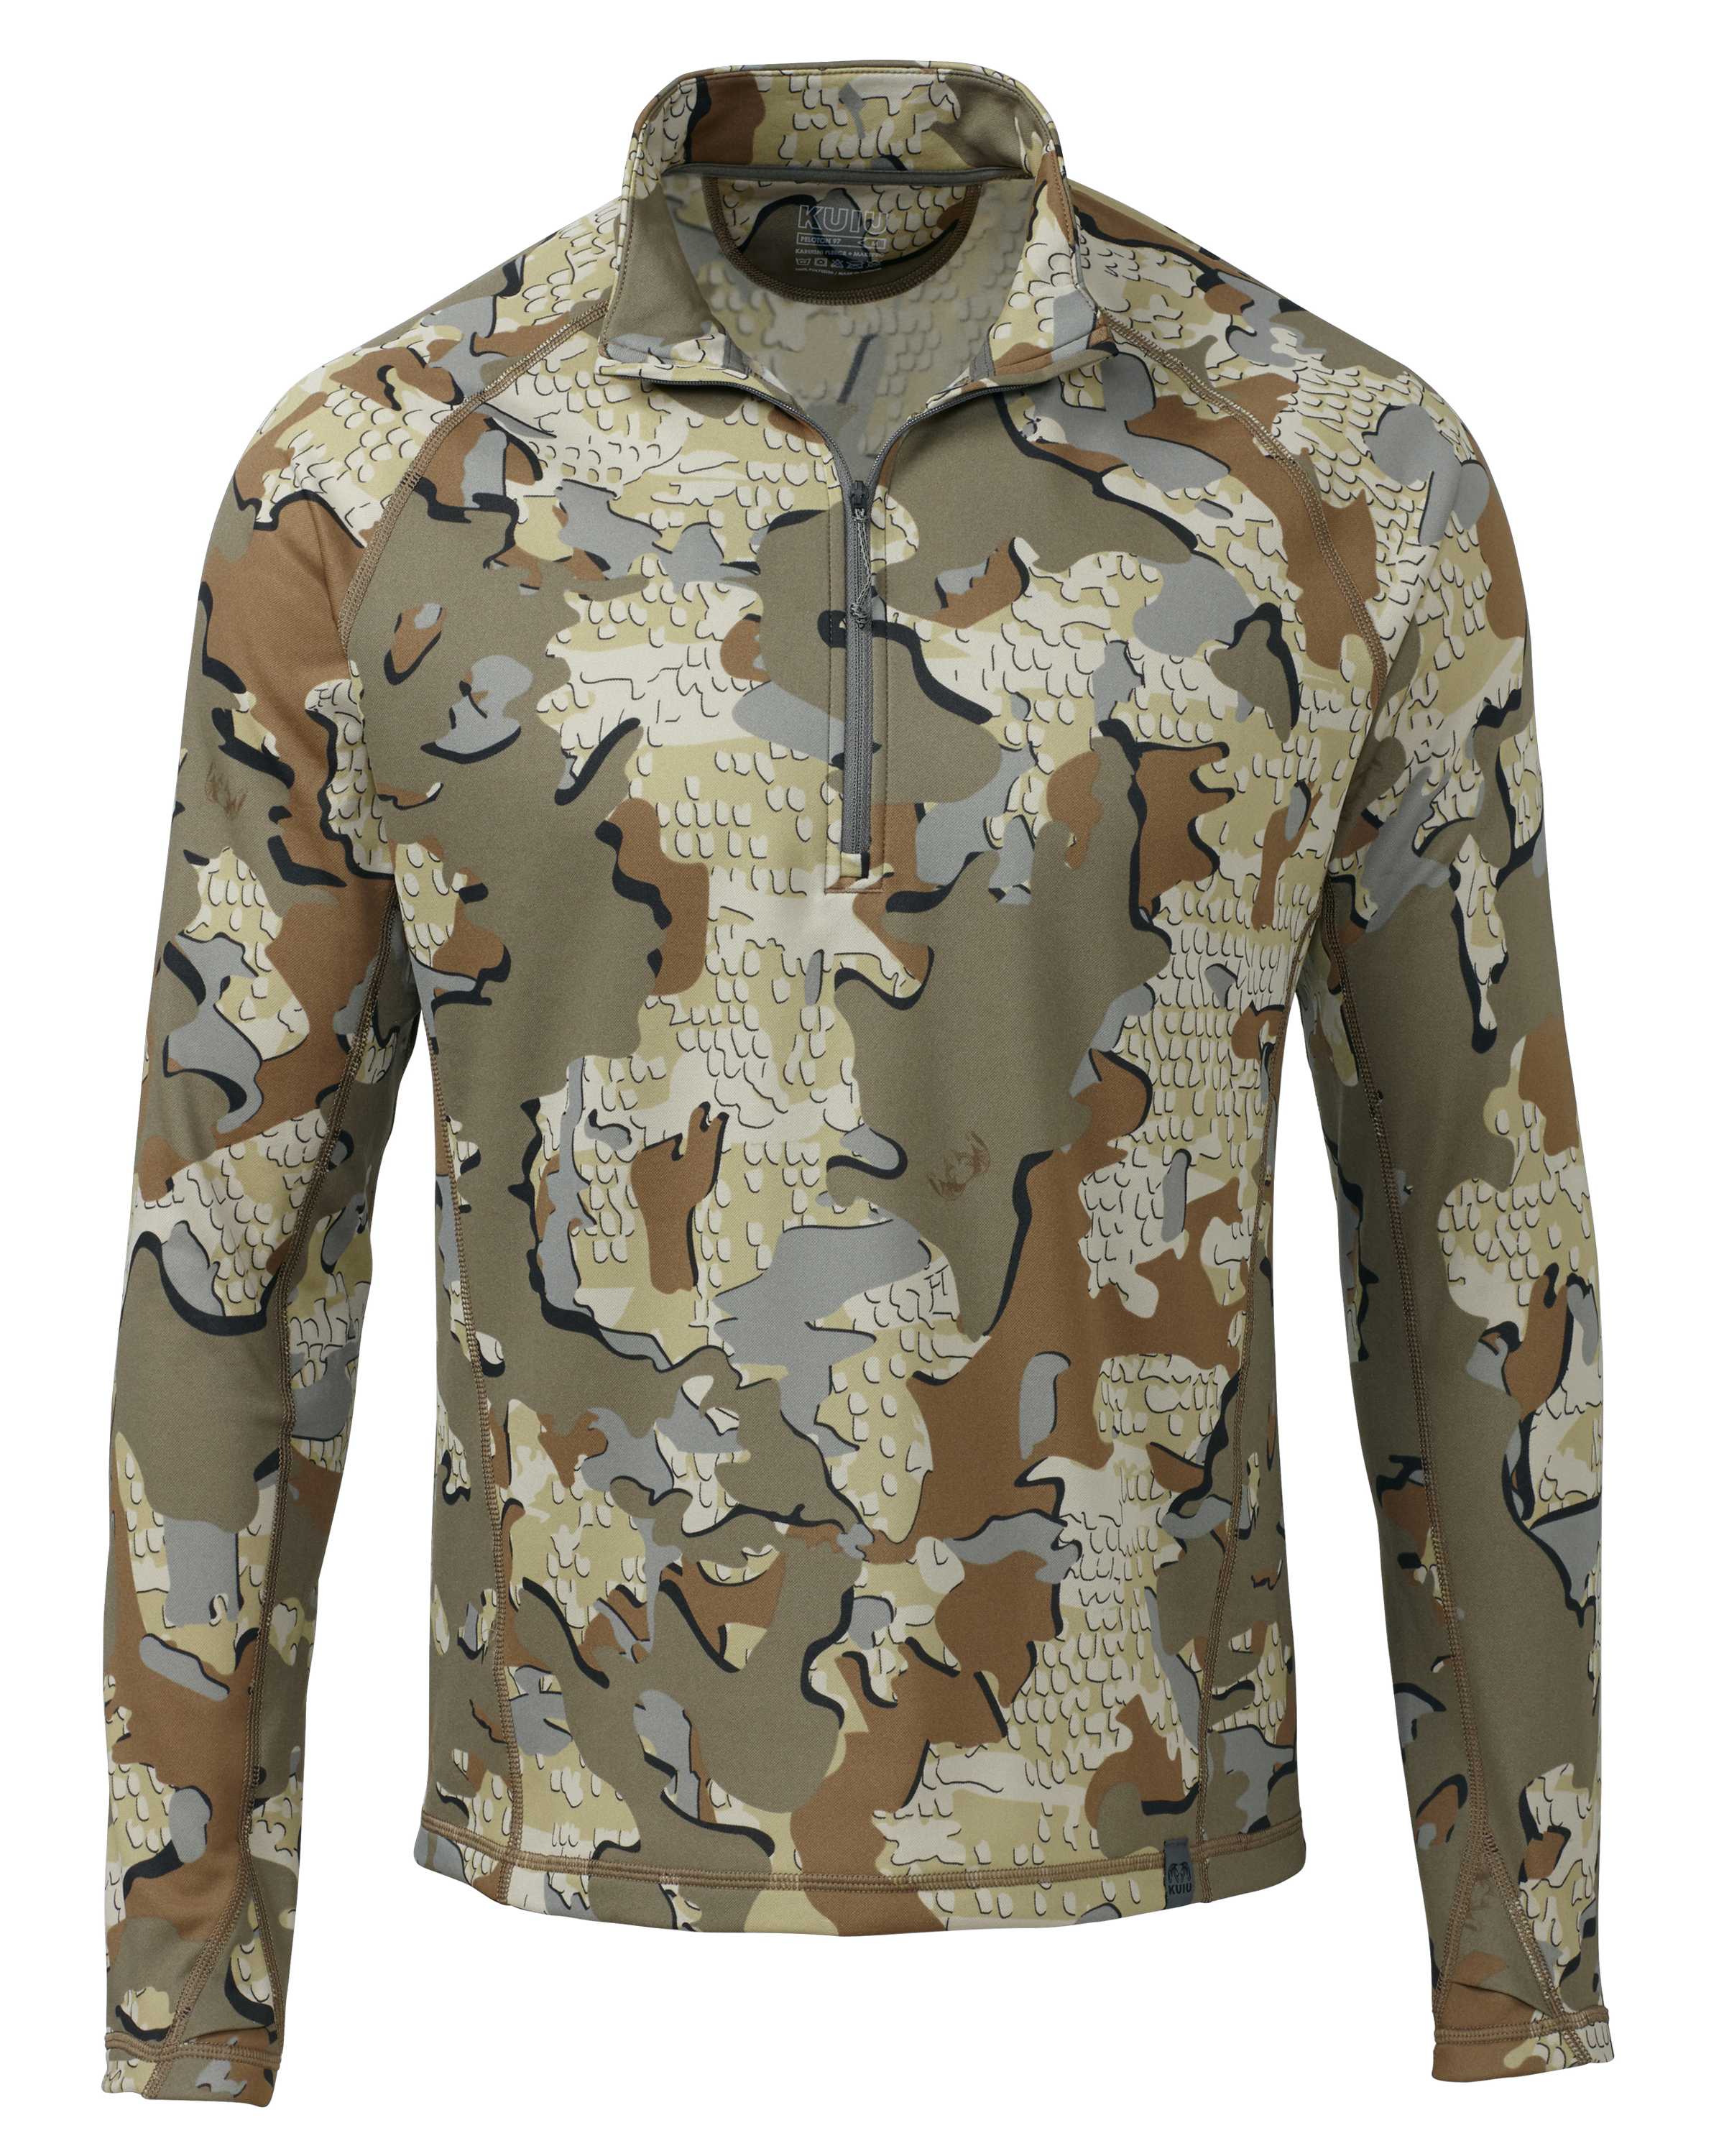 KUIU Peloton 97 Fleece Zip Hunting Shirt in Valo | Size XL